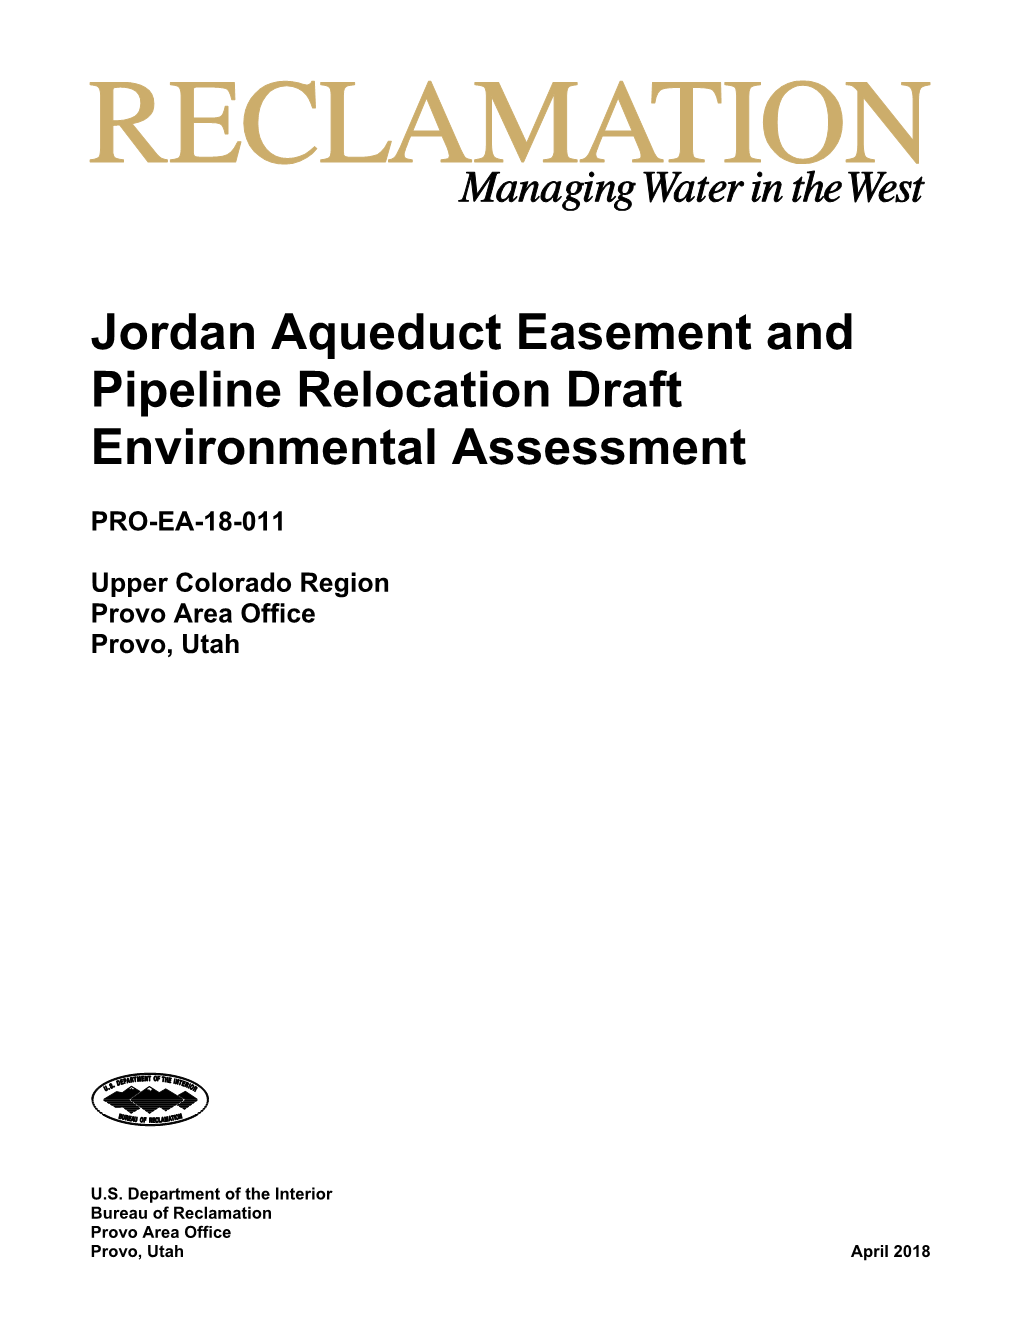 Jordan Aqueduct Easement and Pipeline Relocation Draft Environmental Assessment